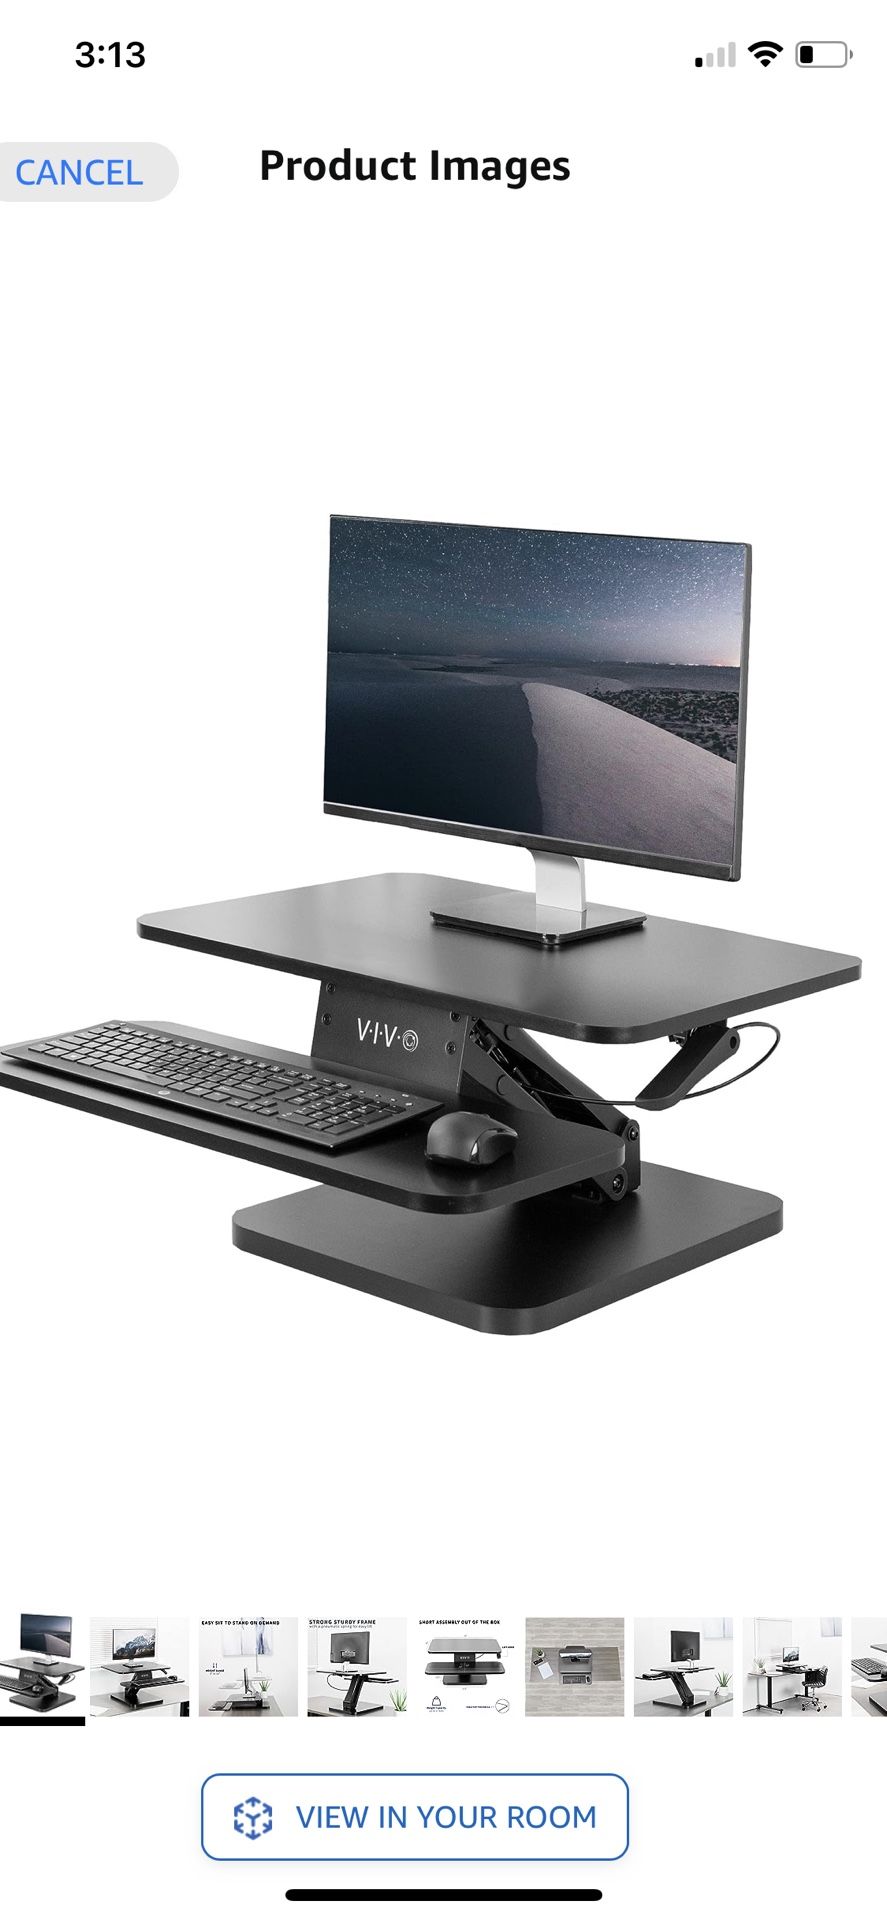 LIKE NEW VIVO Black Height Adjustable 25 inch Standing Desk Converter